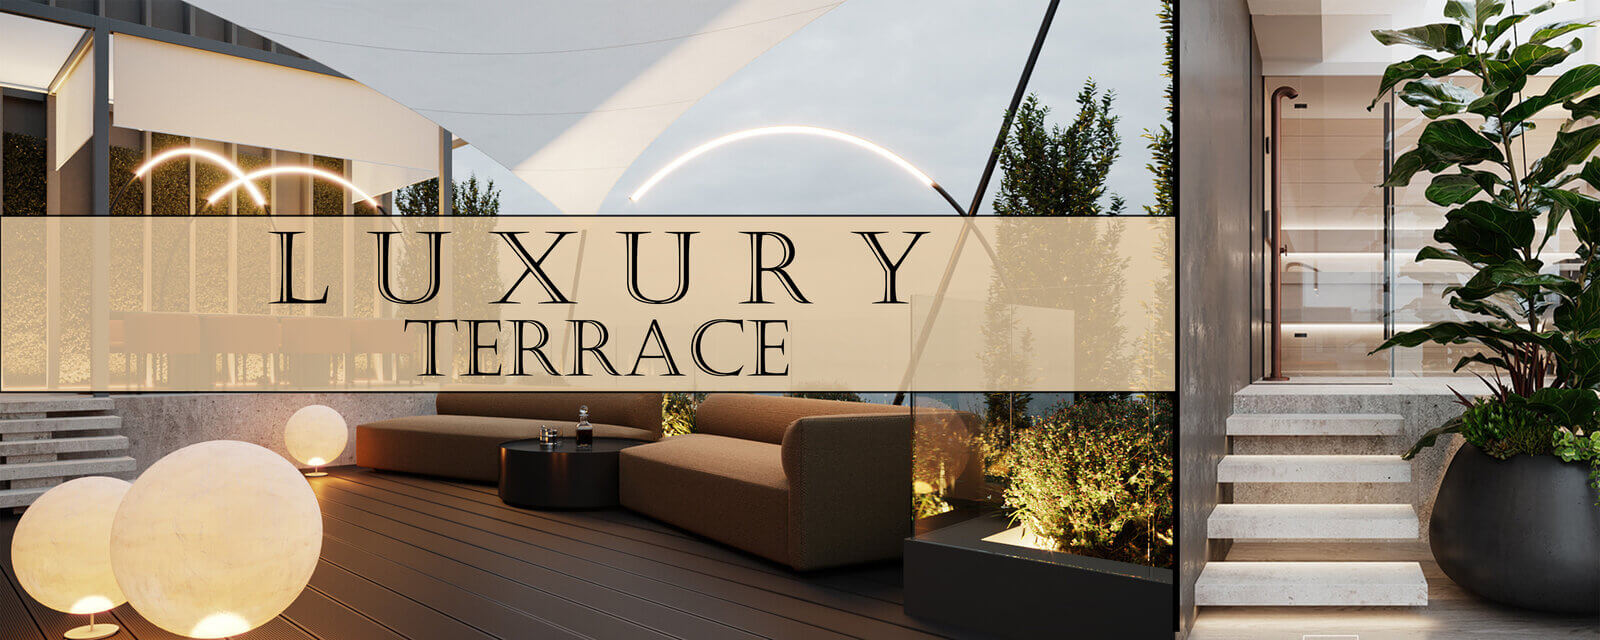 Luxury Terrace